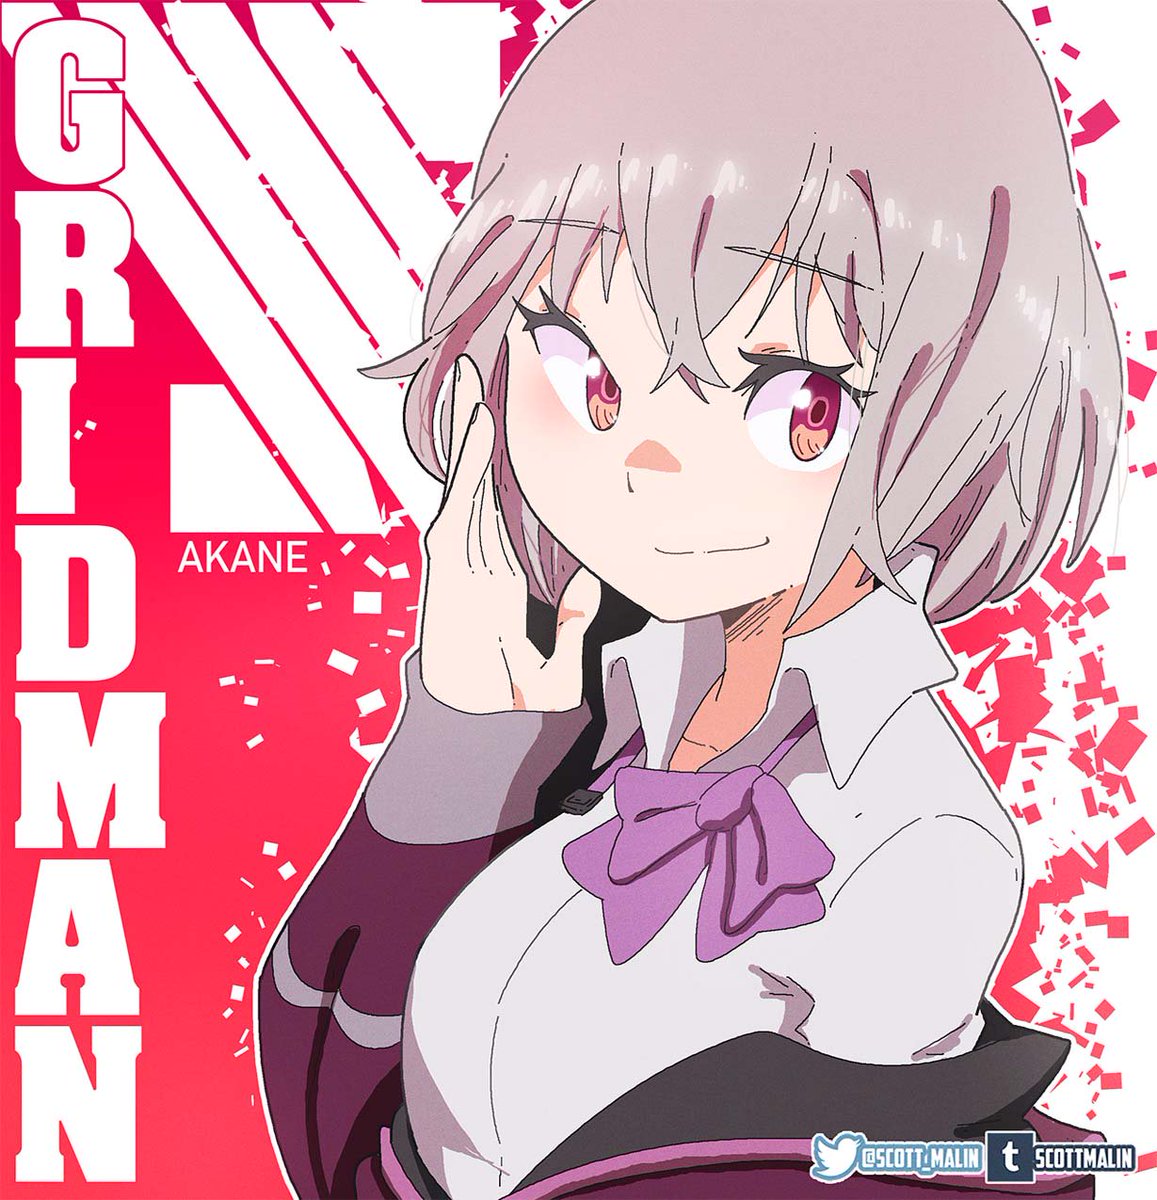 Akane! #art #fanart #anime #SSSS_GRIDMAN 